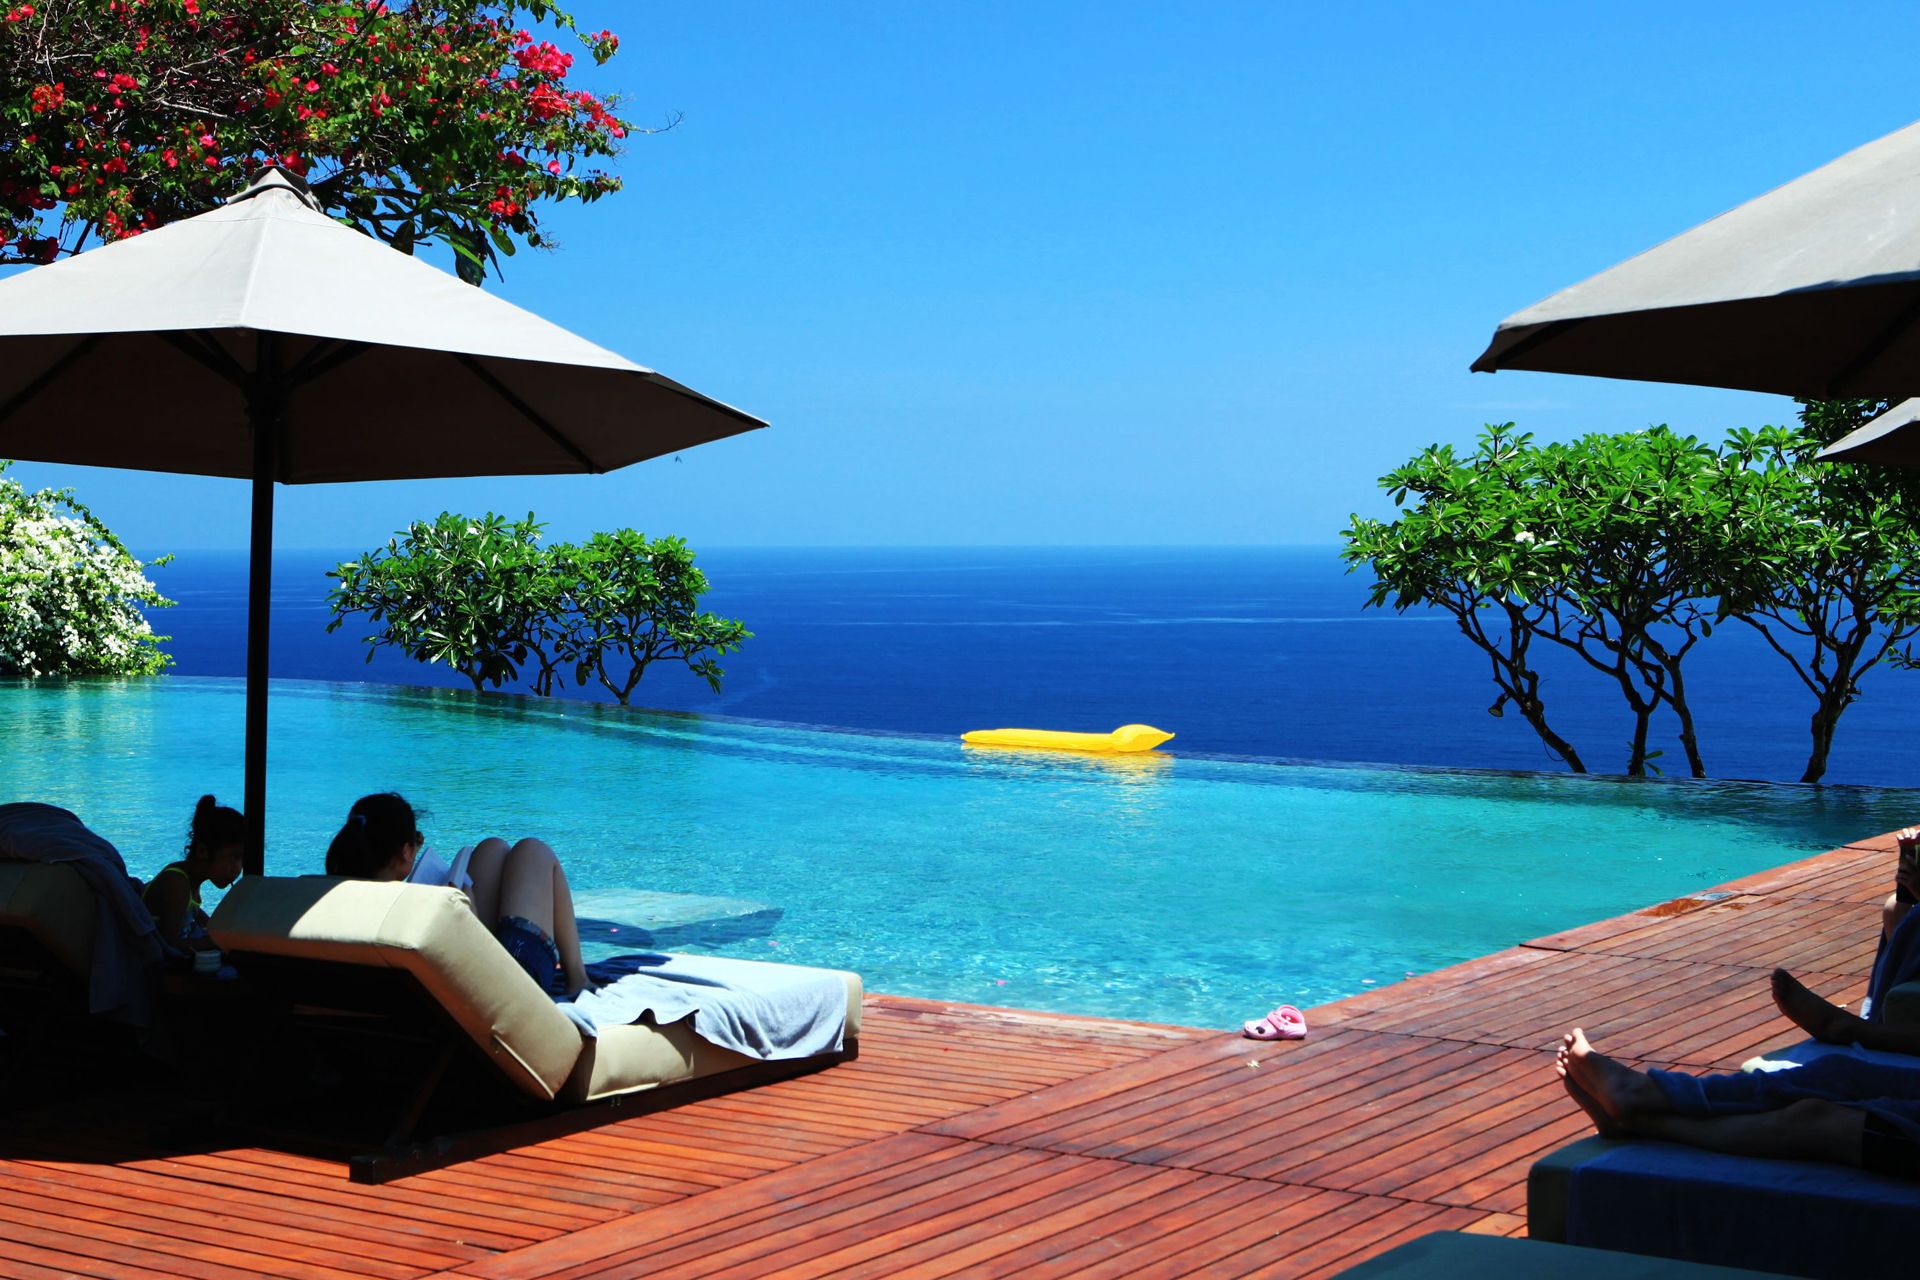 巴厘岛是世界著名旅游岛,海滨浴场里万种风情,景物甚为绮丽壮观